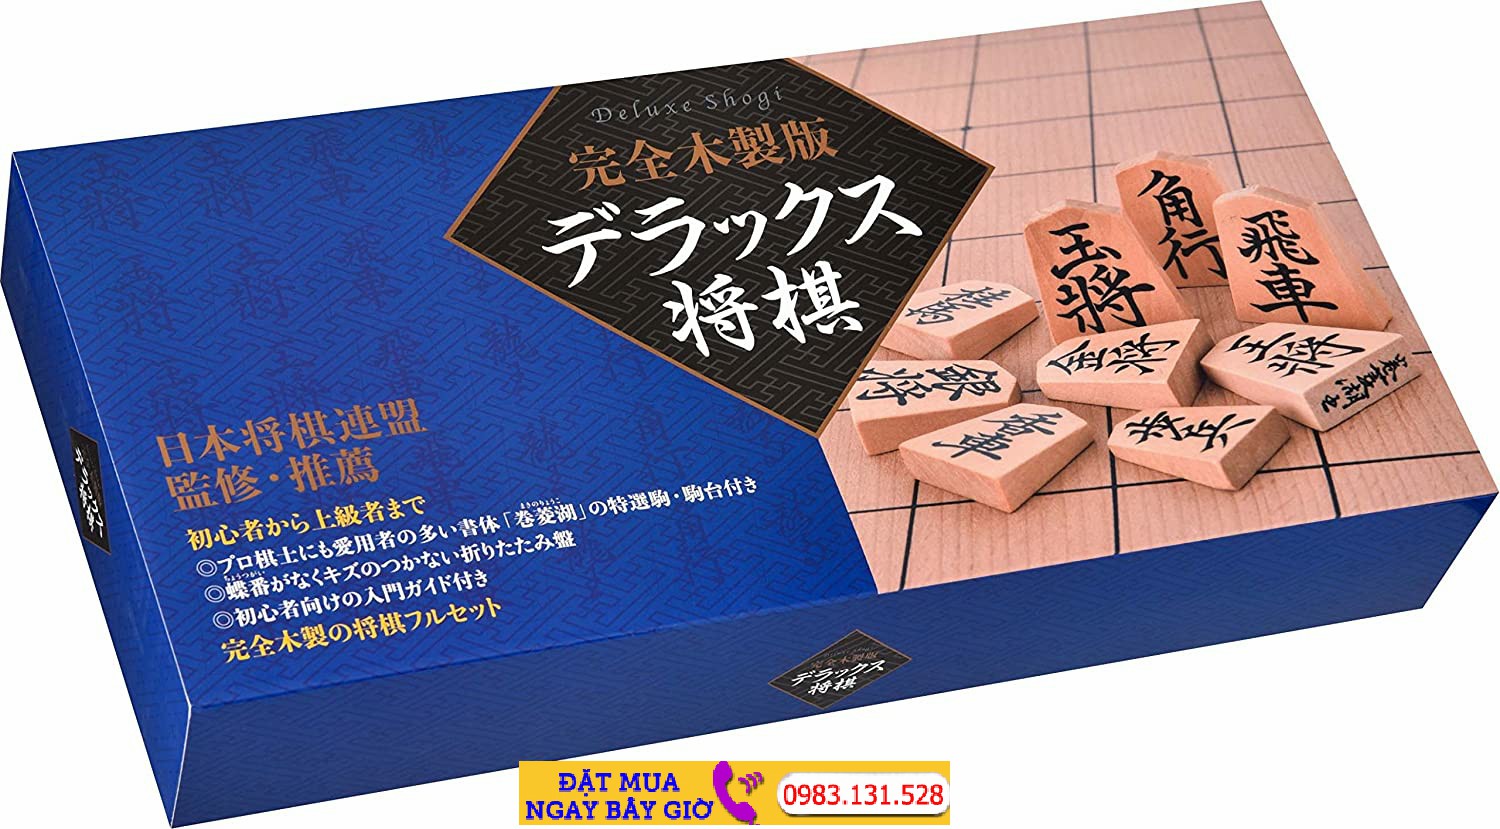 Cờ Shogi chiến thuật: 
Cờ Shogi là một trò chơi cờ đánh giá cao tại Nhật Bản, nơi nó đã trở thành một hình thức giáo dục cổ điển. Trò chơi này rất phổ biến tại các cuộc thi trên toàn thế giới được quan tâm bởi hàng triệu người. Nếu bạn yêu thích các trò chơi chiến thuật và muốn trải nghiệm một trò chơi cờ hay, Cờ Shogi đang chờ đón bạn!